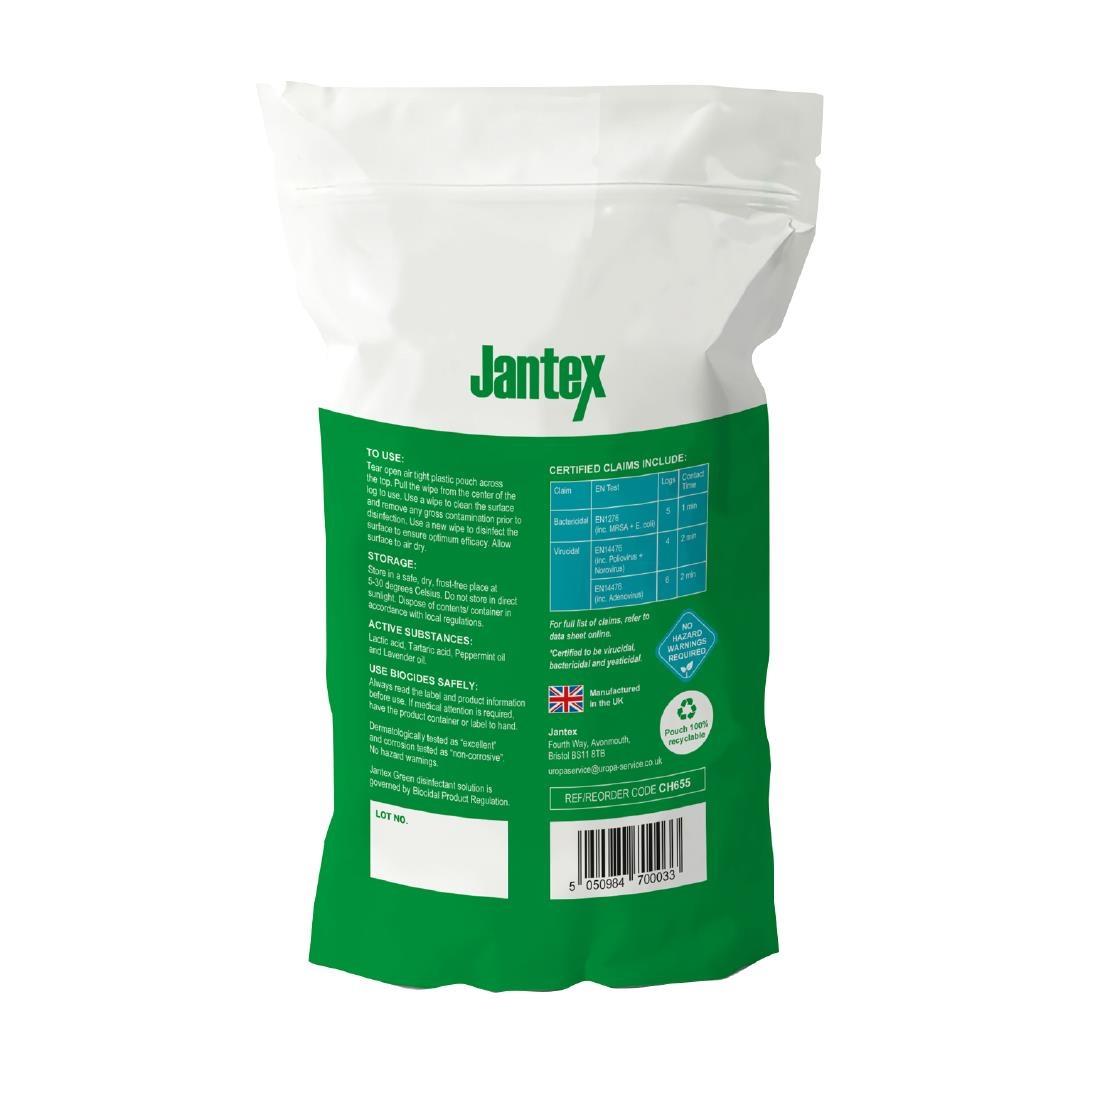 Jantex Green RTU Probe Sanitiser Wipes Refill Pack 130mm (Pack of 100)